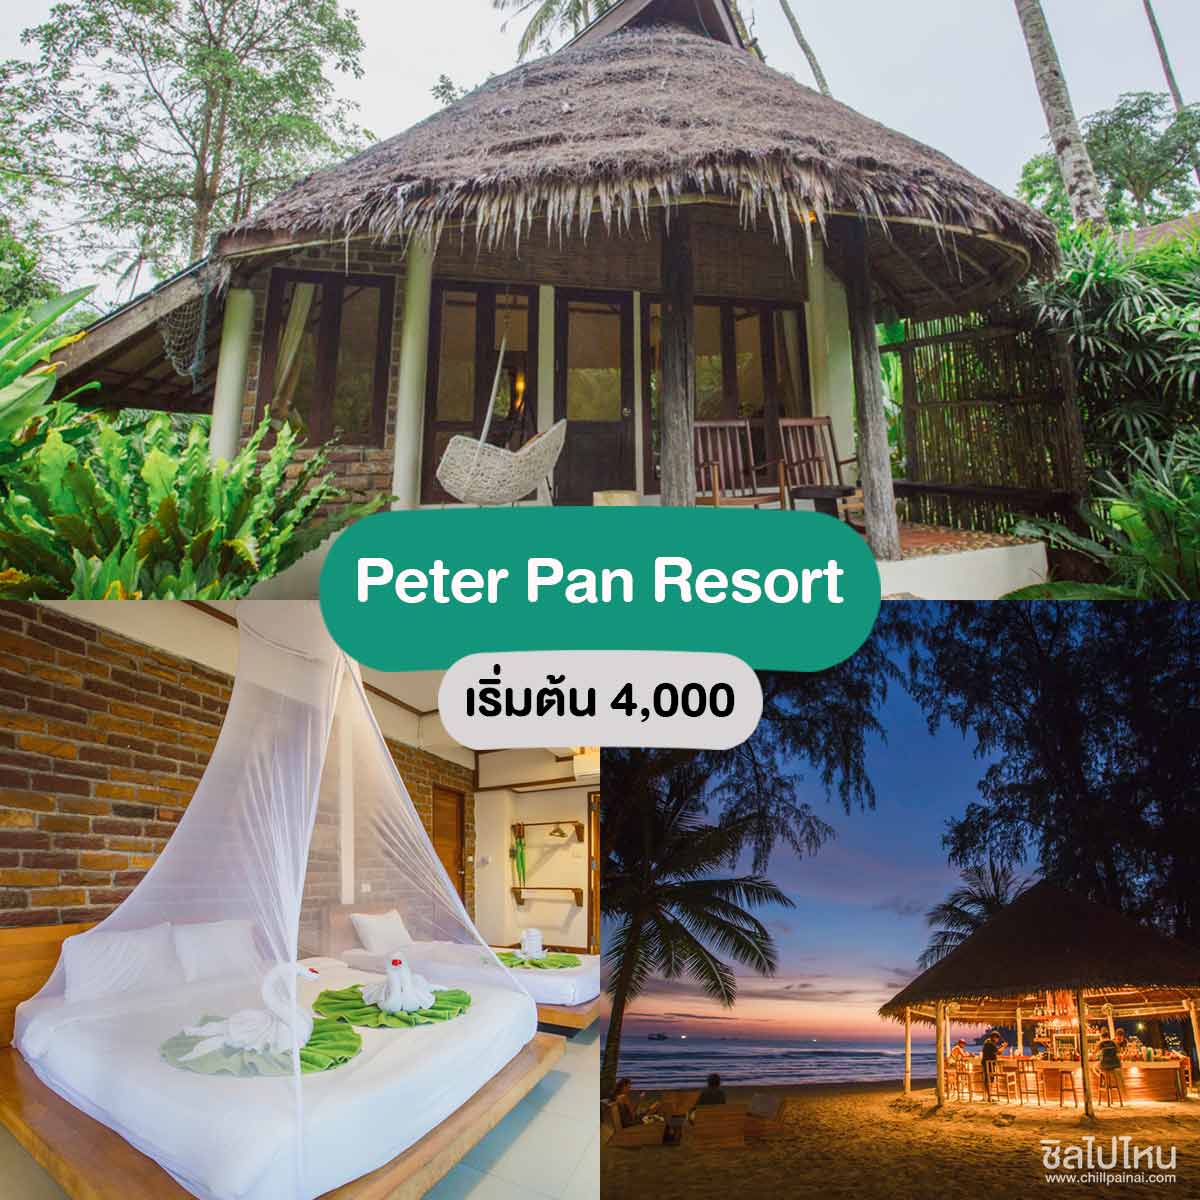 Peter Pan Resort